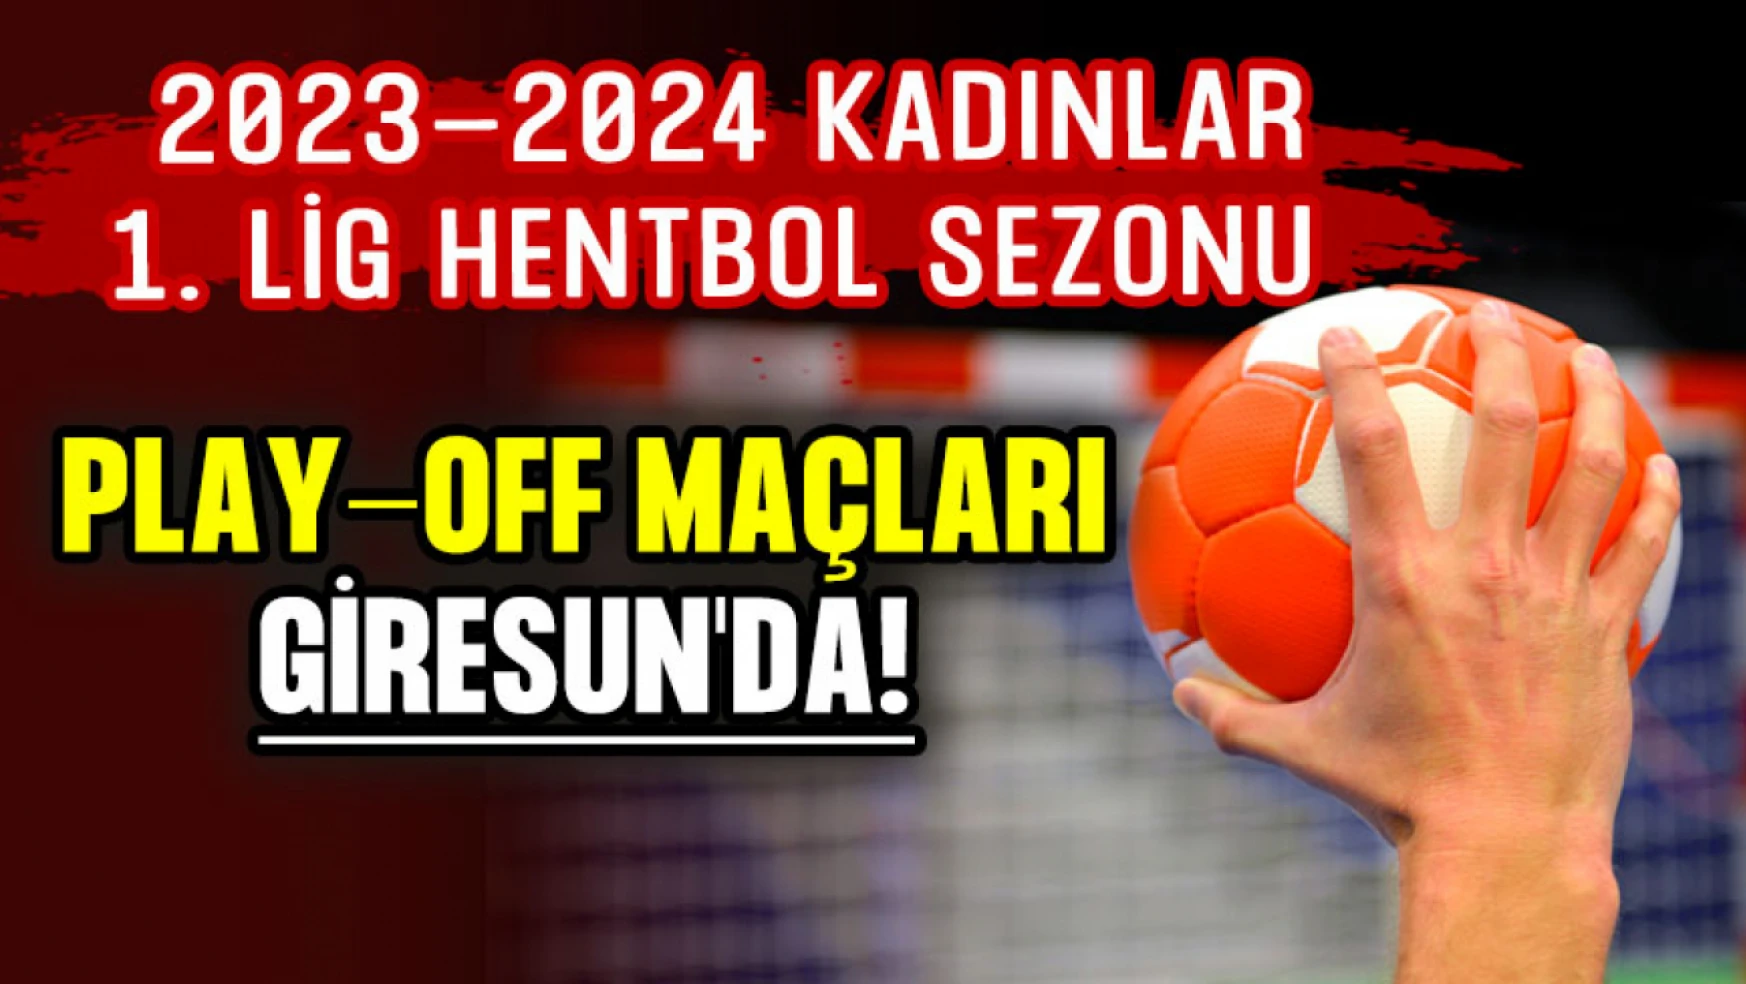 2023-24 Kadınlar 1. Lig Hentbol Sezonu Play-off Maçları Giresun'da!